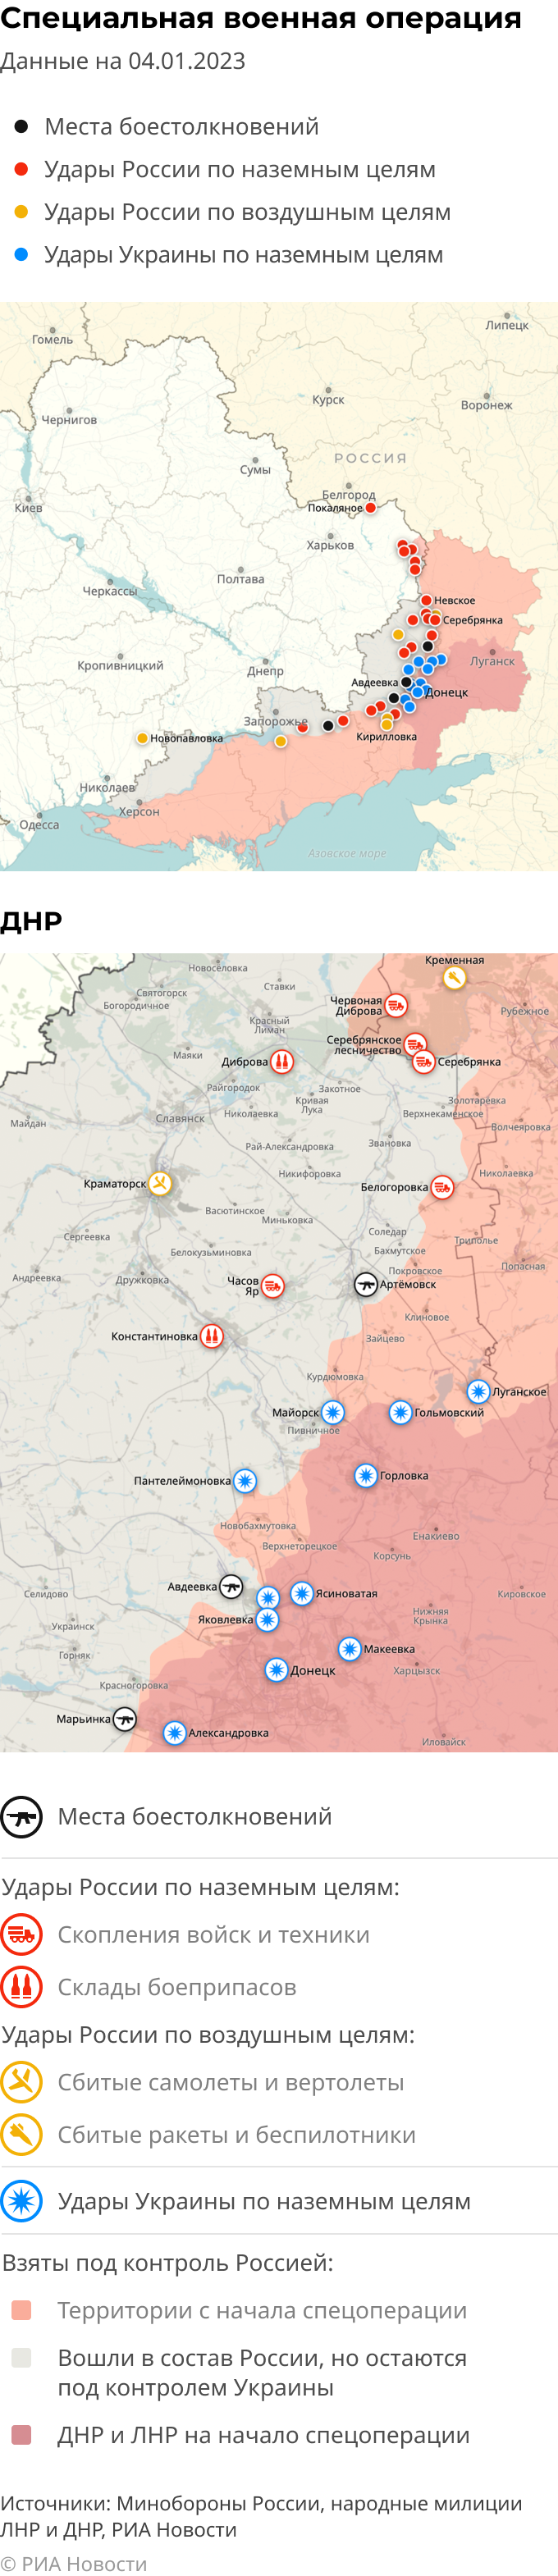 Карта спецоперации Вооруженных сил России на Украине на 04.01.2023